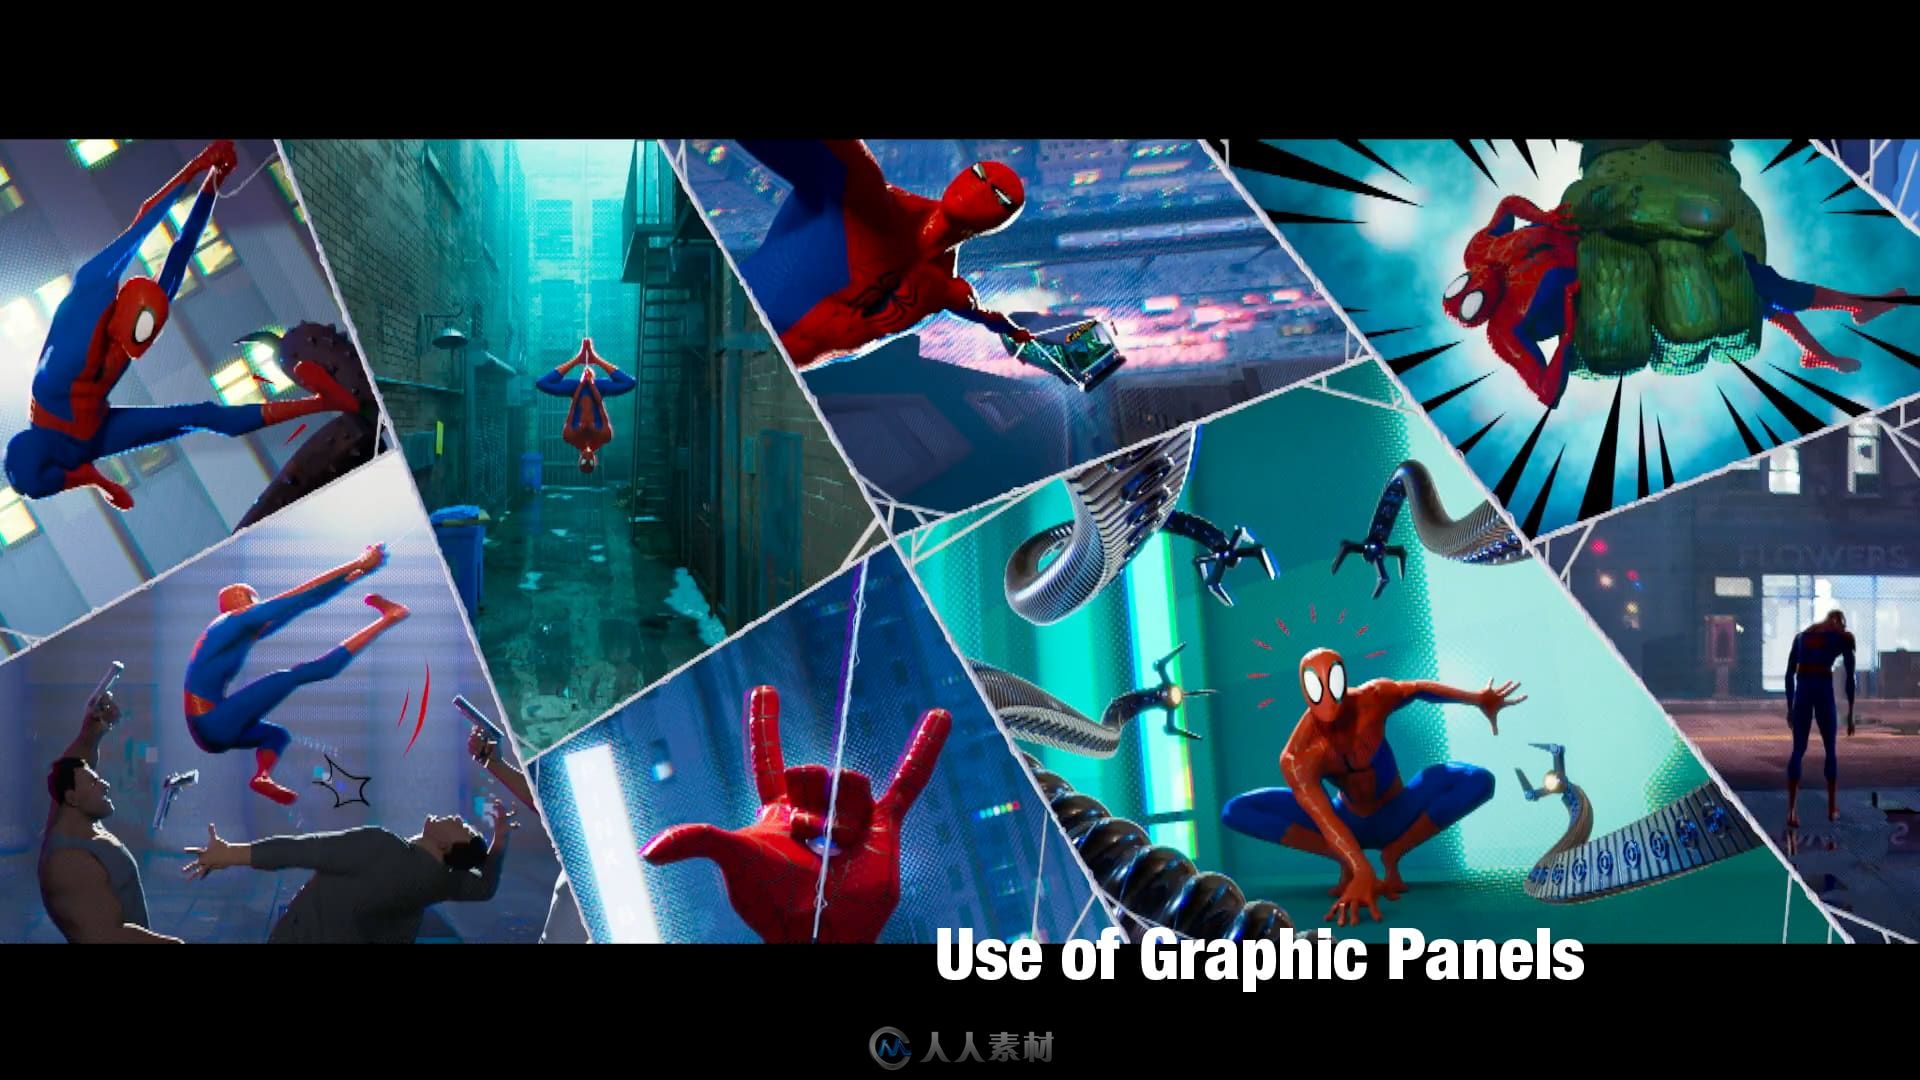 深度剖析影片《蜘蛛侠：平行宇宙》中的视觉风格 今年最具创造性的视觉效果